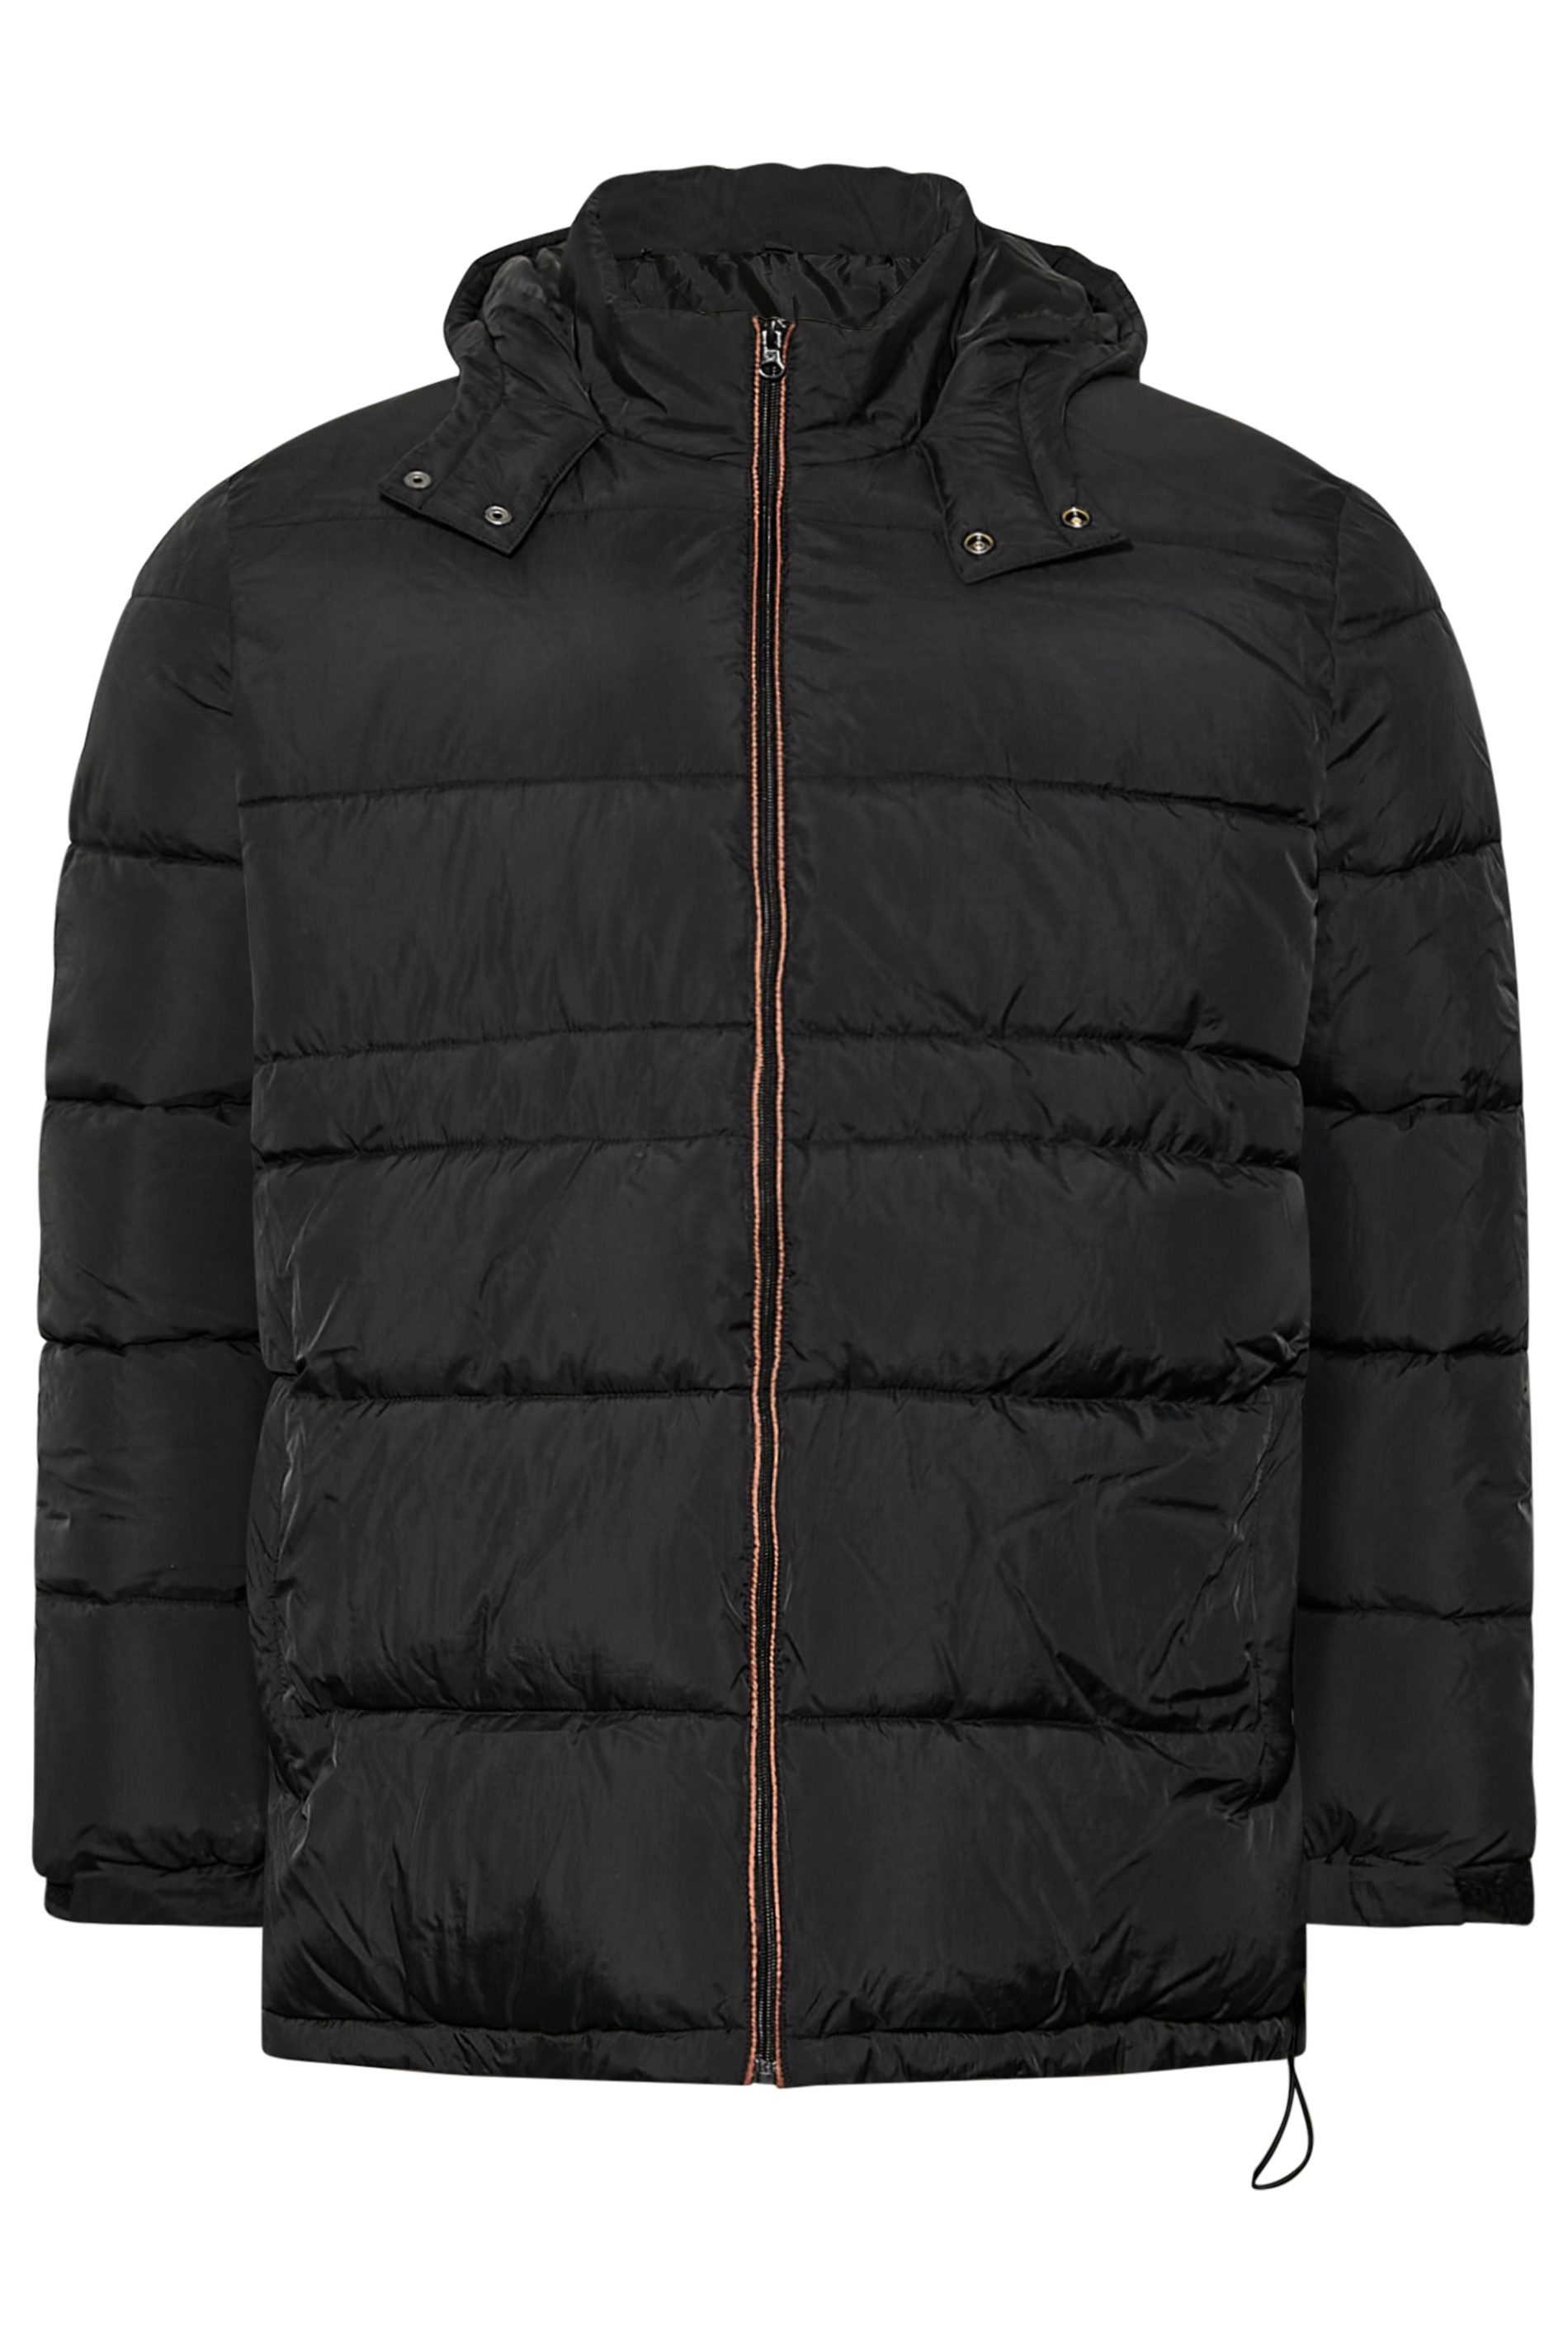 BadRhino Big & Tall Black Zip Puffer Jacket | BadRhino